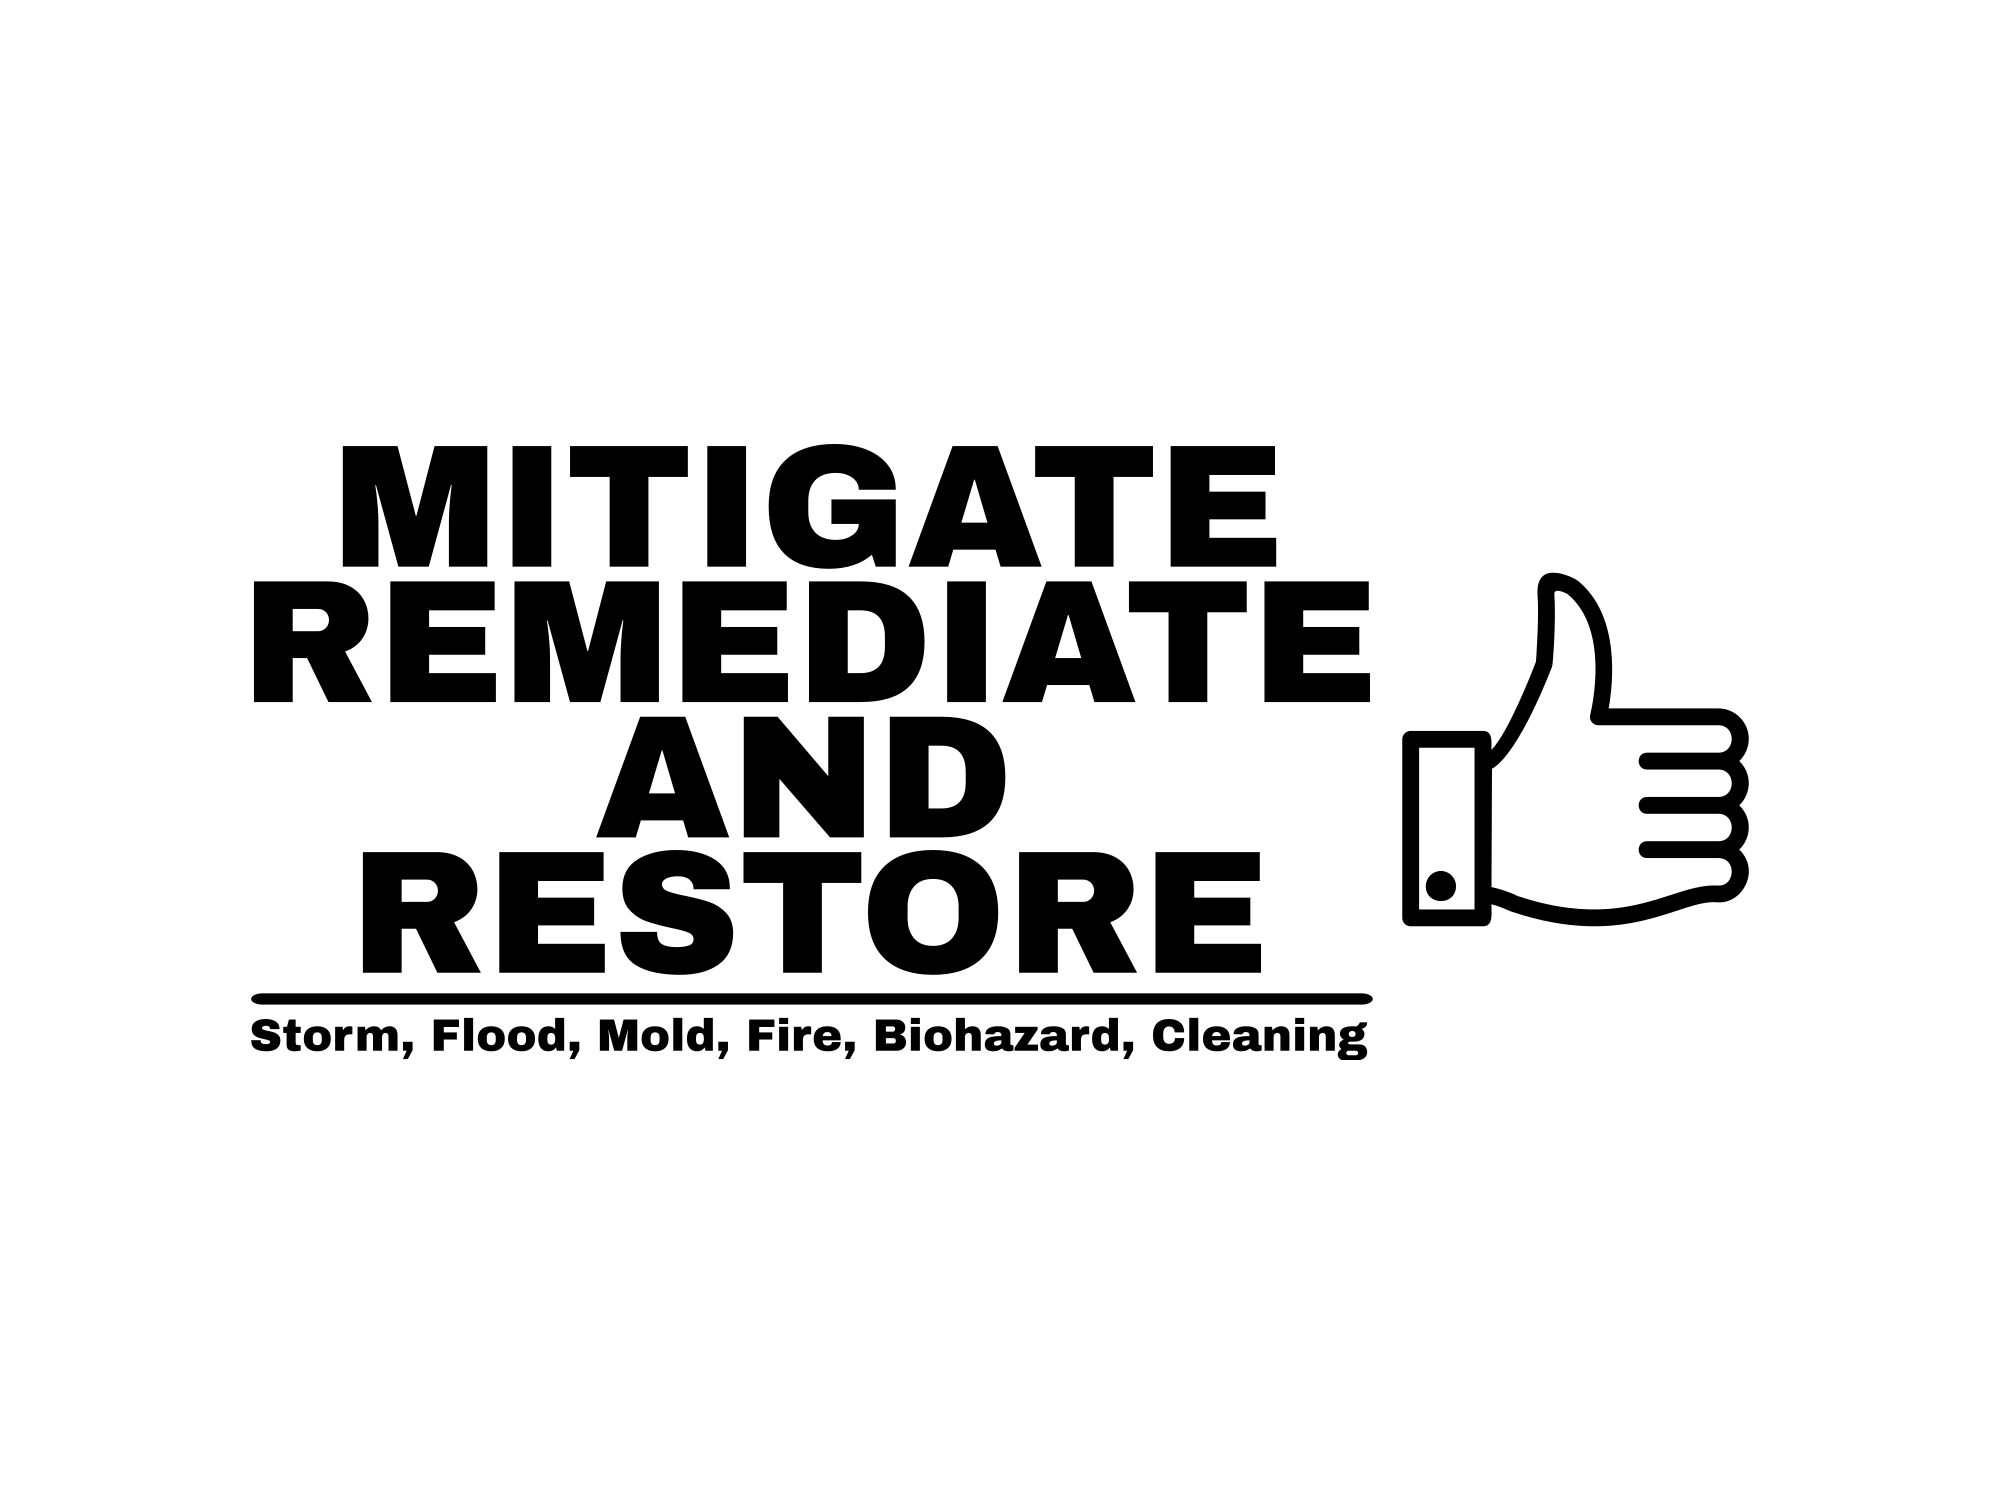 Mitigate, Remediate, and Restore